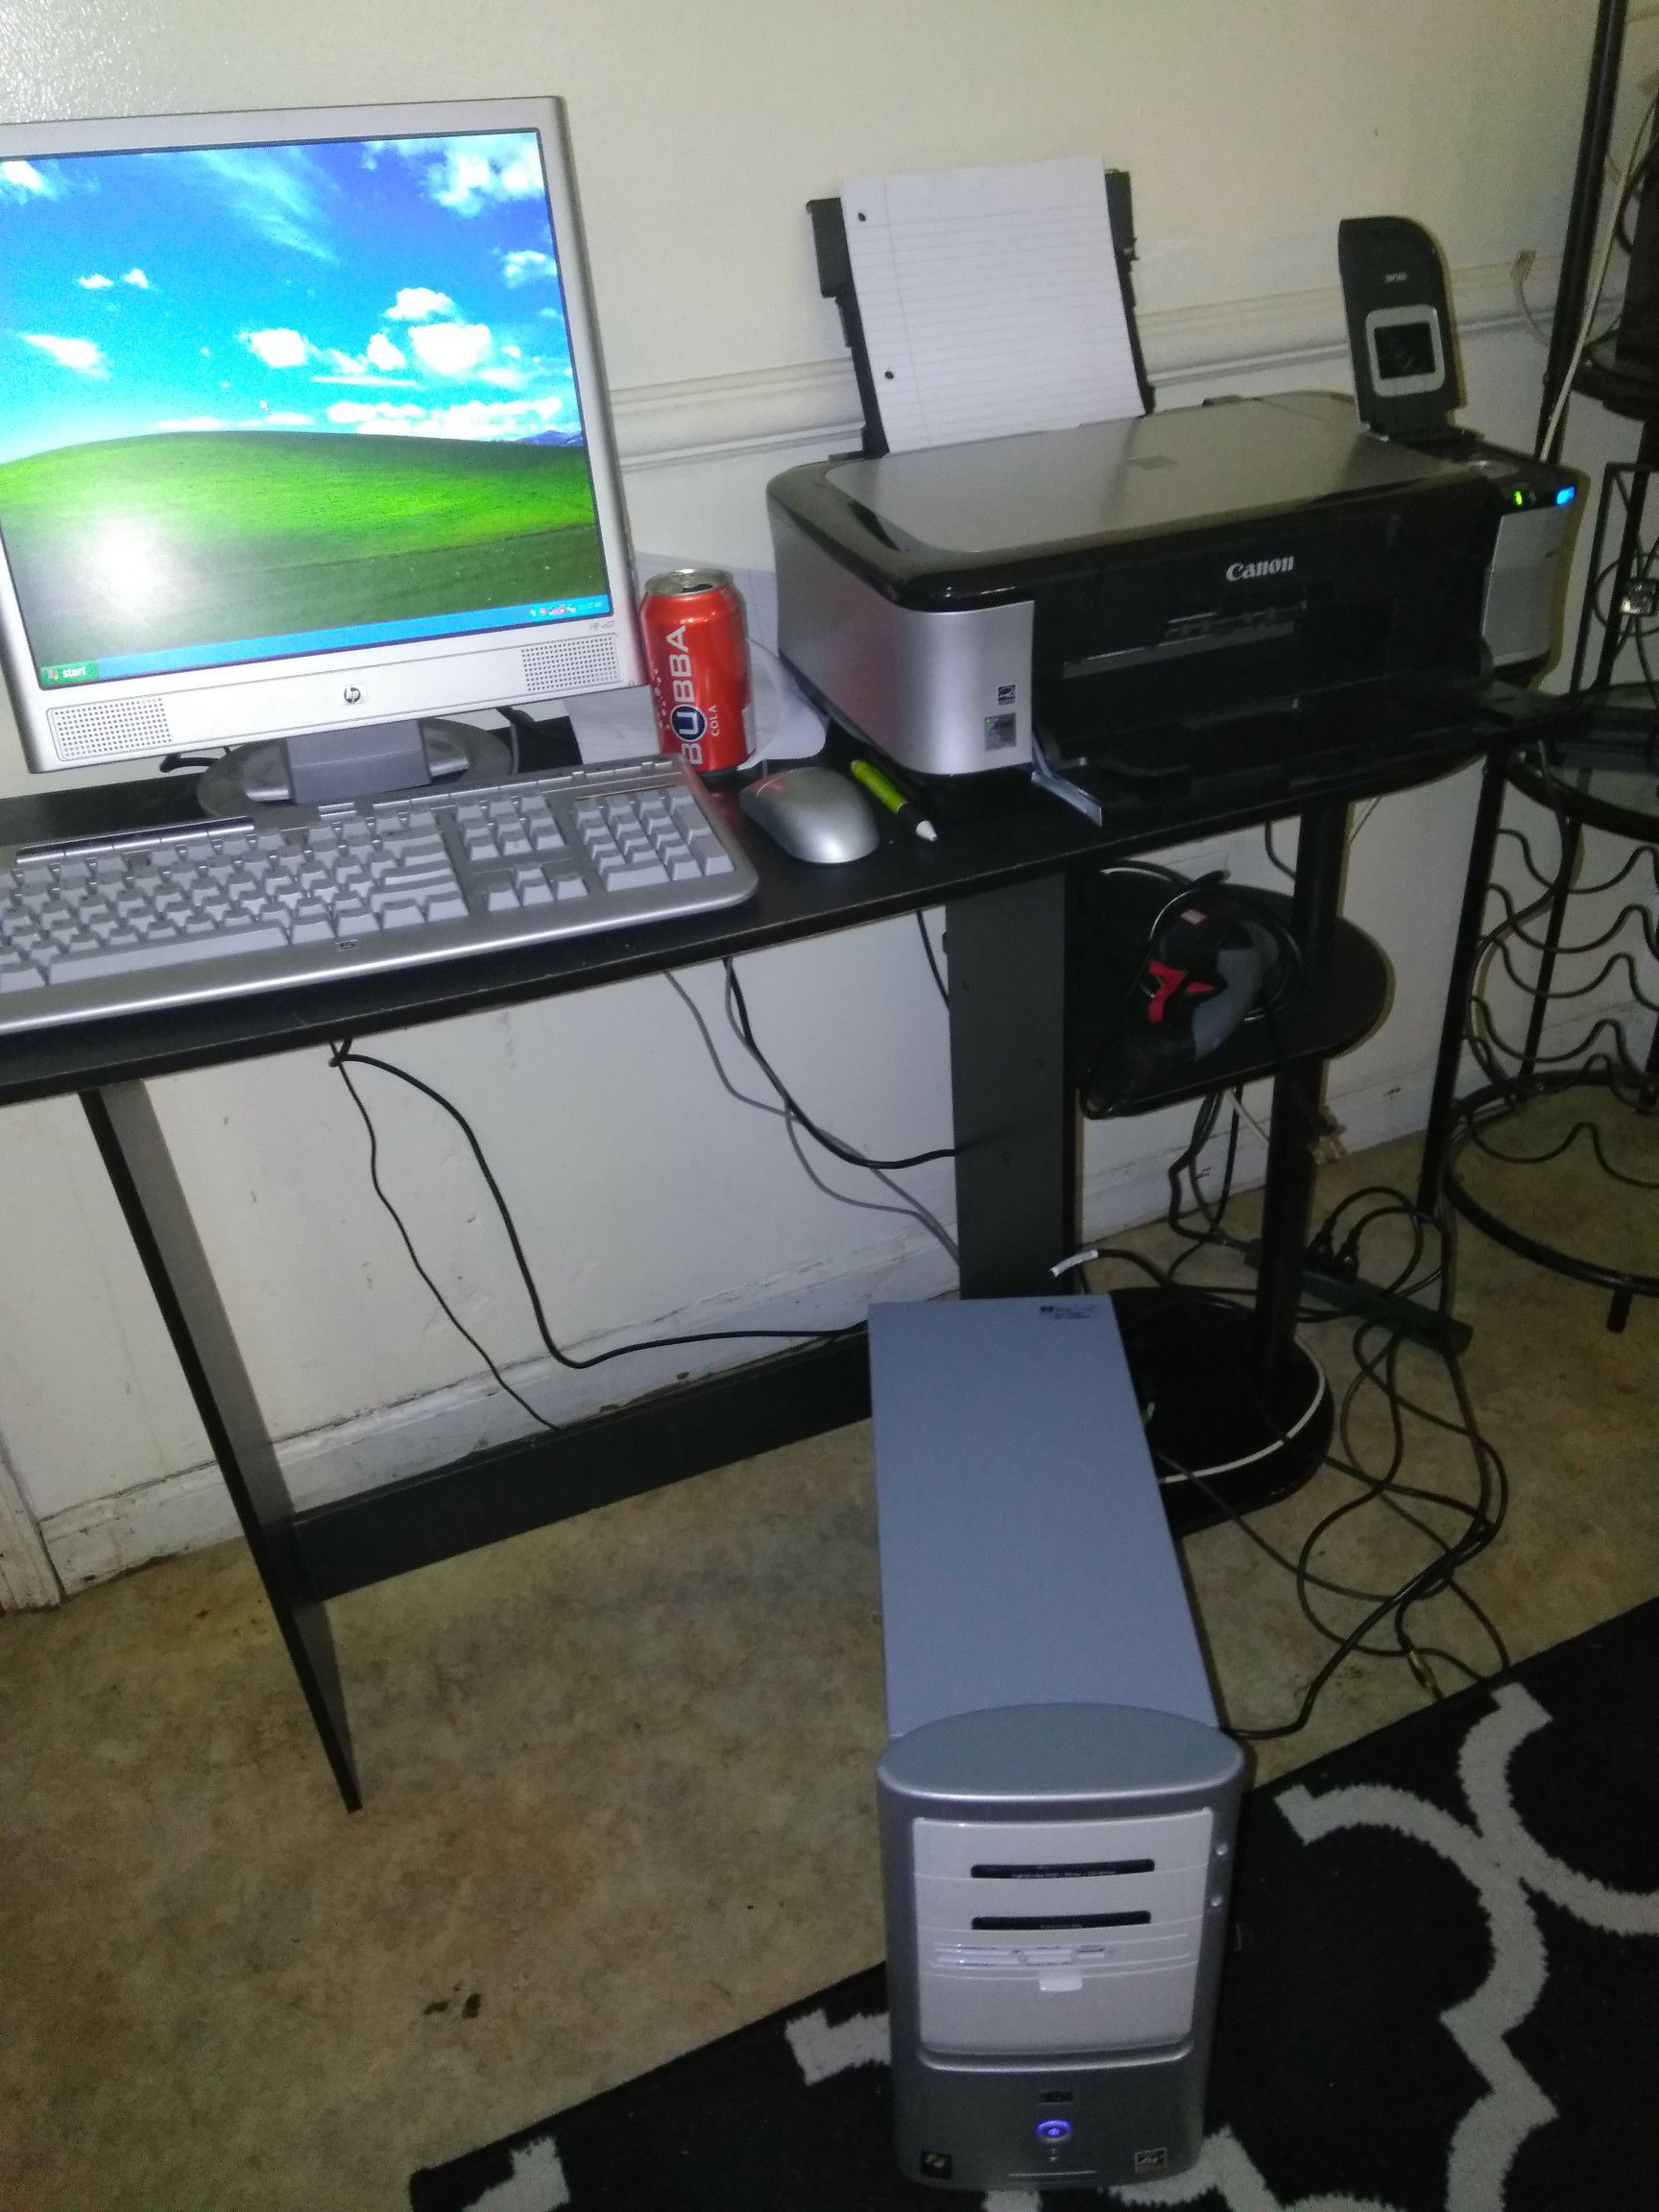 HP desktop computer and Canon printer